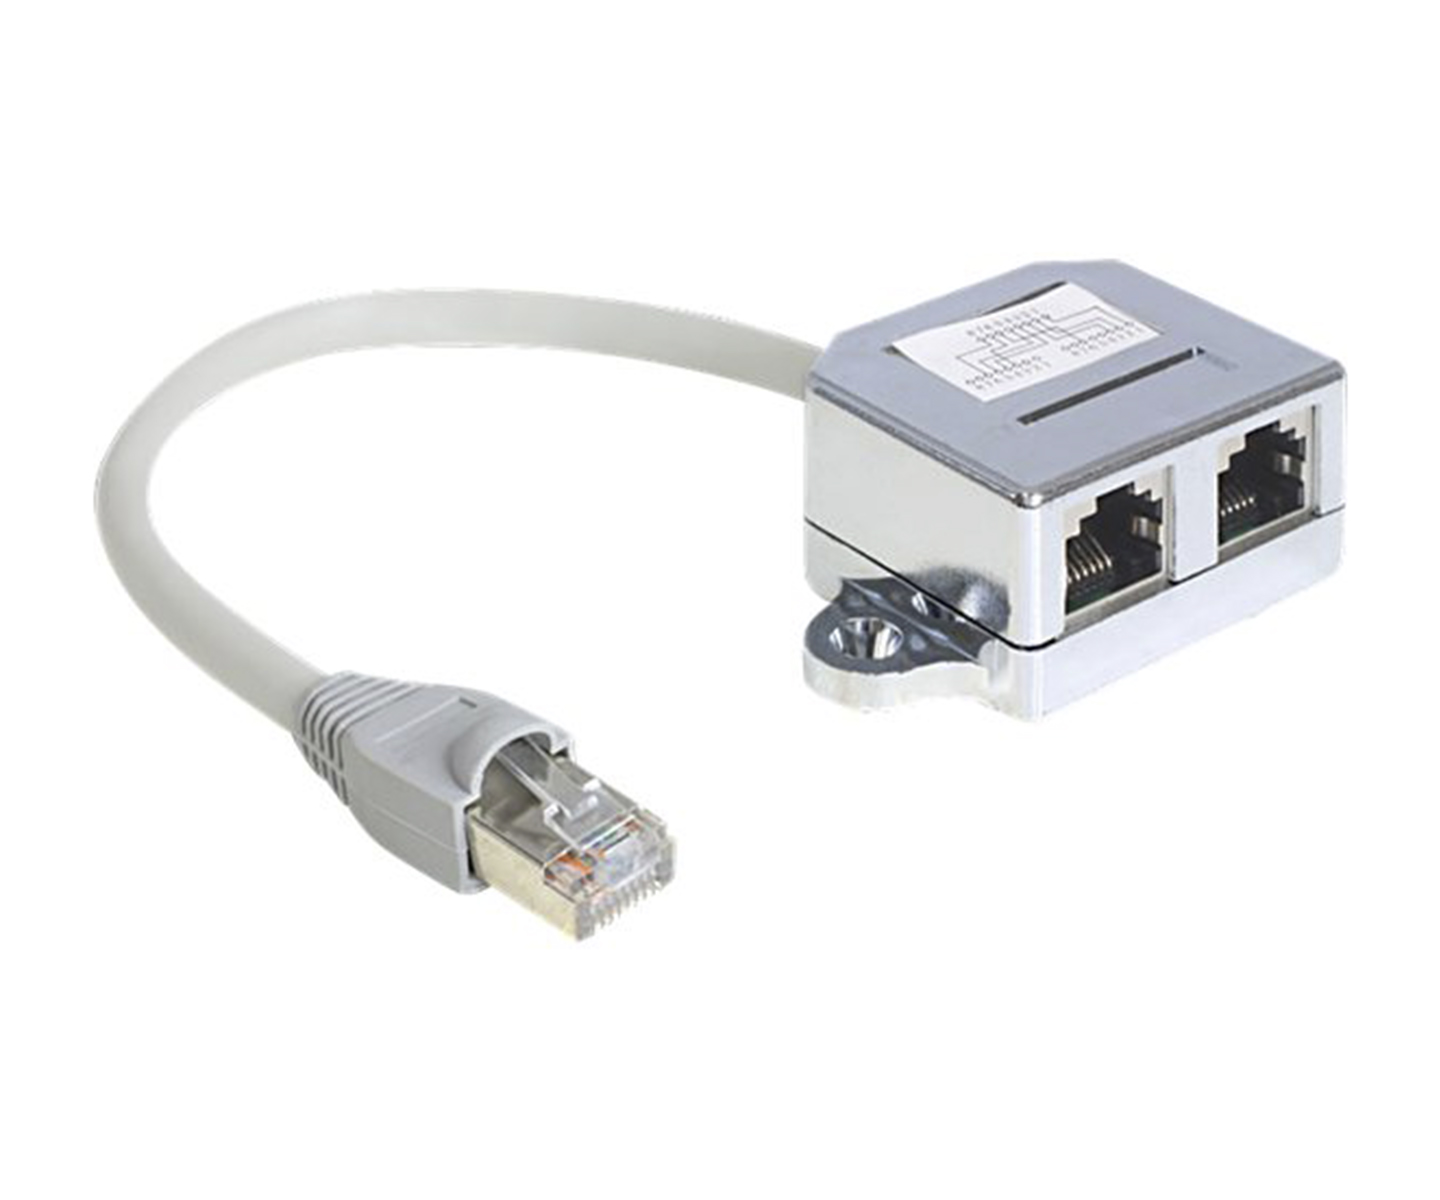 DeLOCK RJ45 Port Doubler 15cm Ethernet 100Base-TX splitter